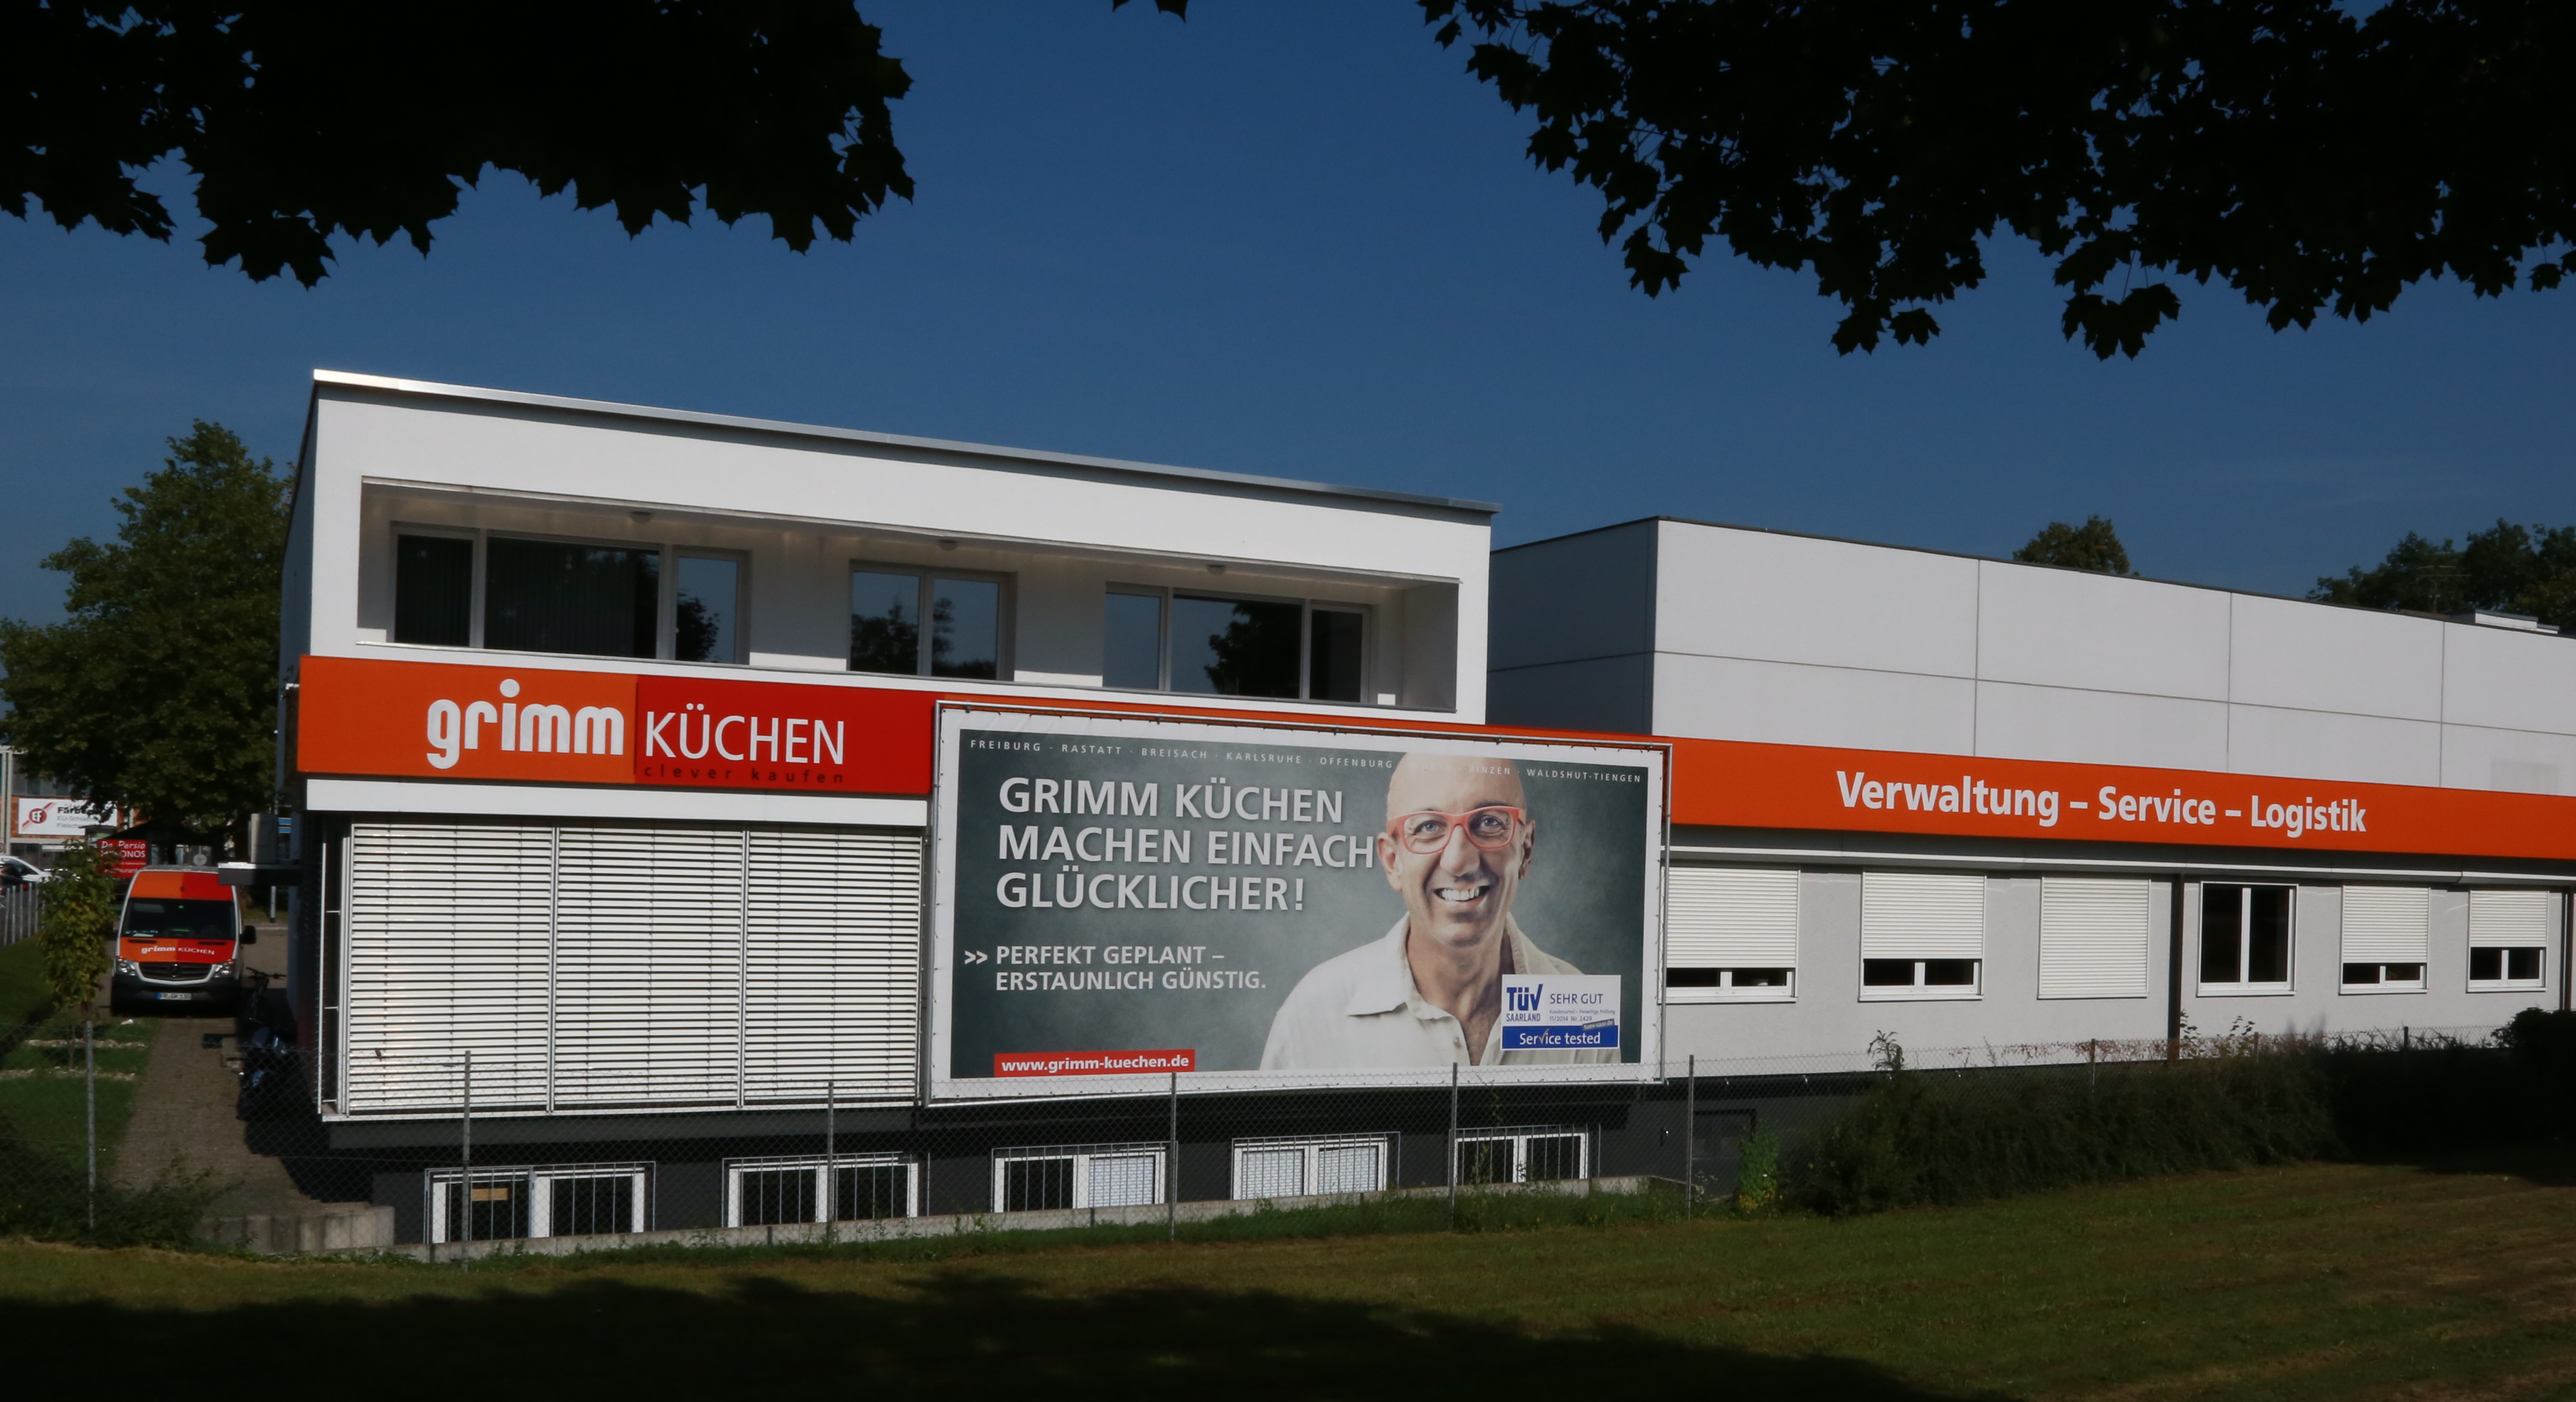 GRIMM Küchen Servicecenter Süd, Tullastraße 65 in Freiburg im Breisgau